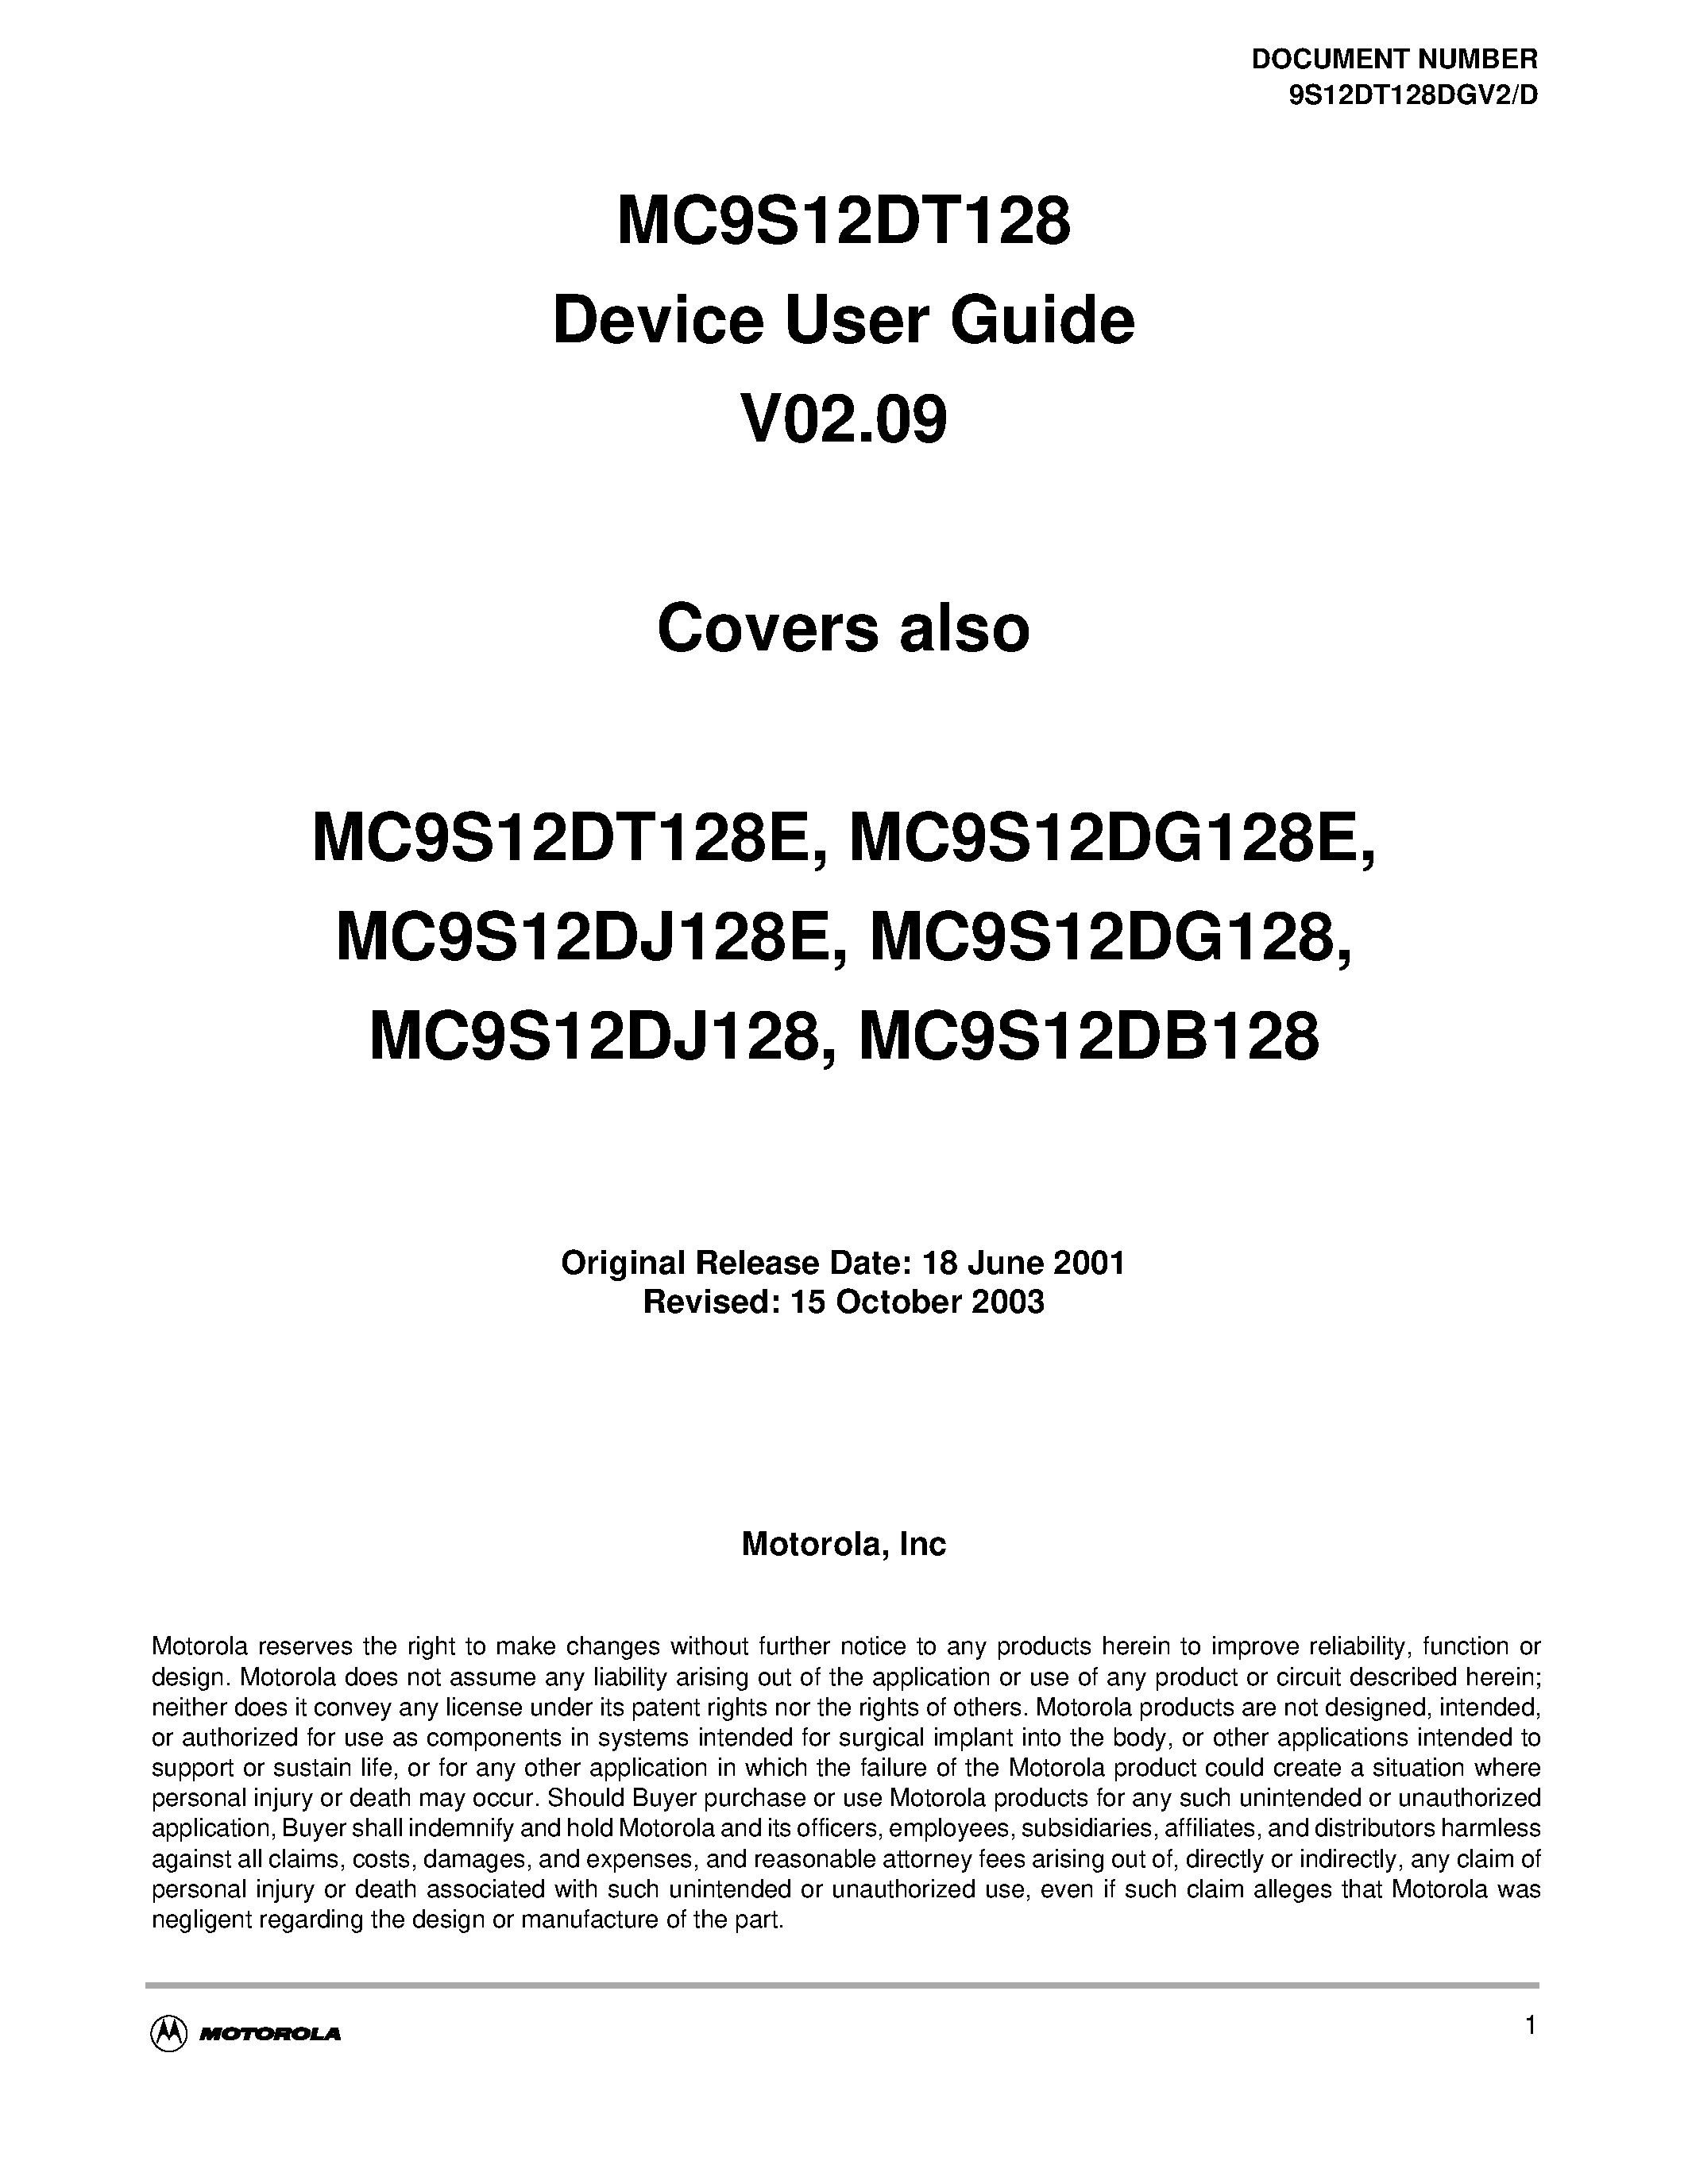 Даташит S12FTS128KV2D - MC9S12DT128 Device User Guide V02.09 страница 1